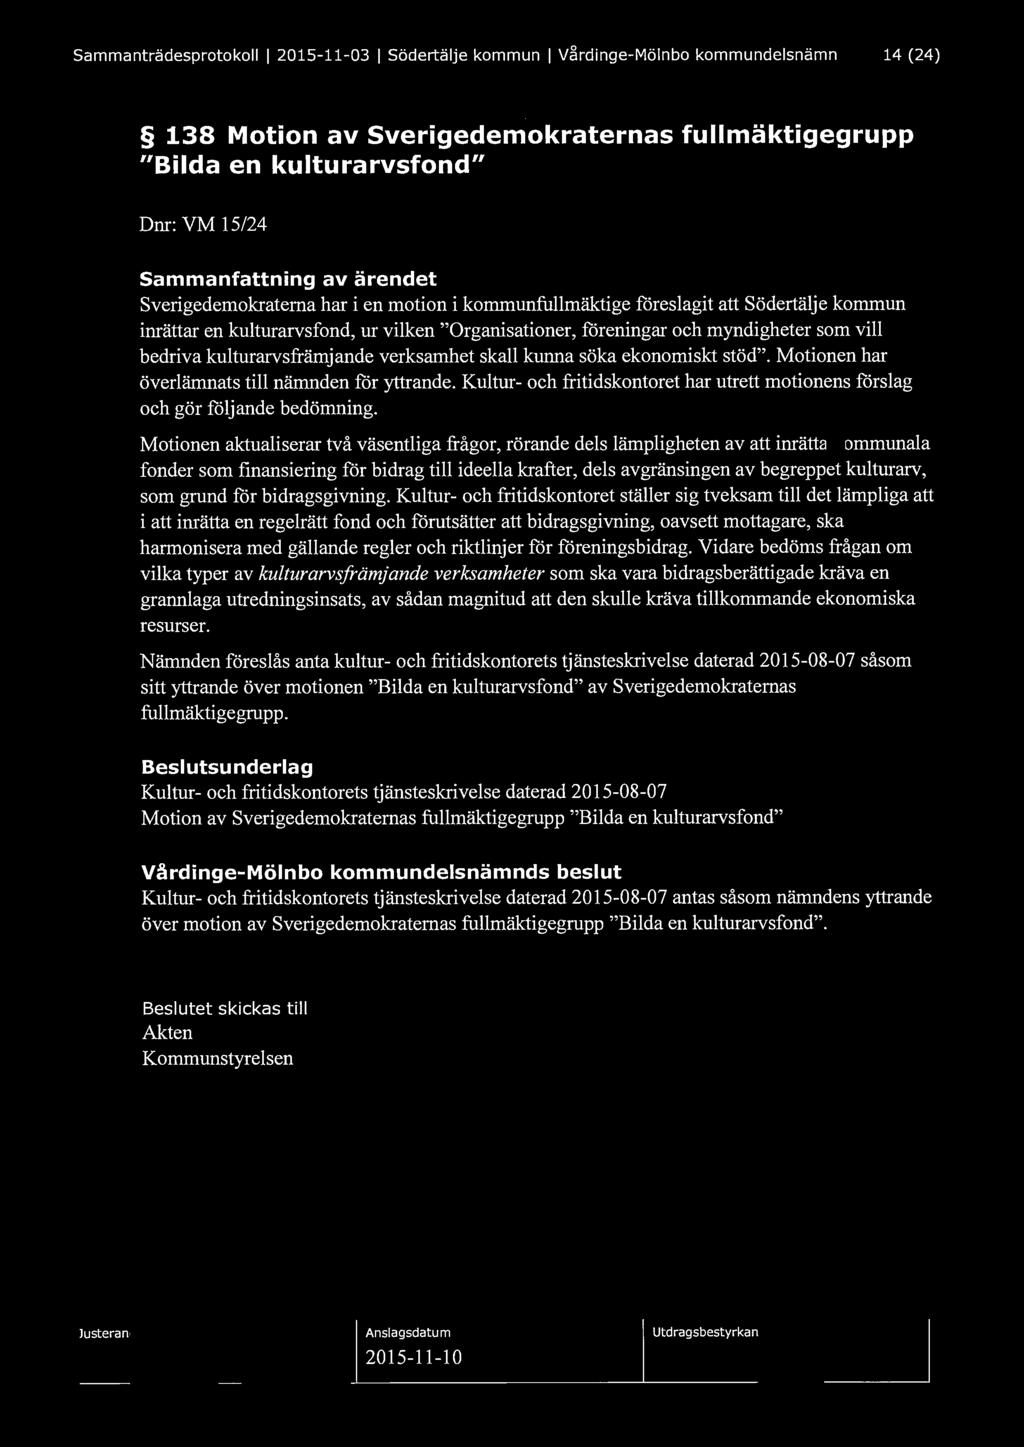 Sammanträdesprotokoll l 2015-11-03 l Södertälje kommun l Vårdinge-Mölnbo kommundelsnämnd 14 (24) 138 Motion av Sverigedemokraternas fullmäktigegrupp "Bilda en kulturarvsfond" Dnr: VM 15/24